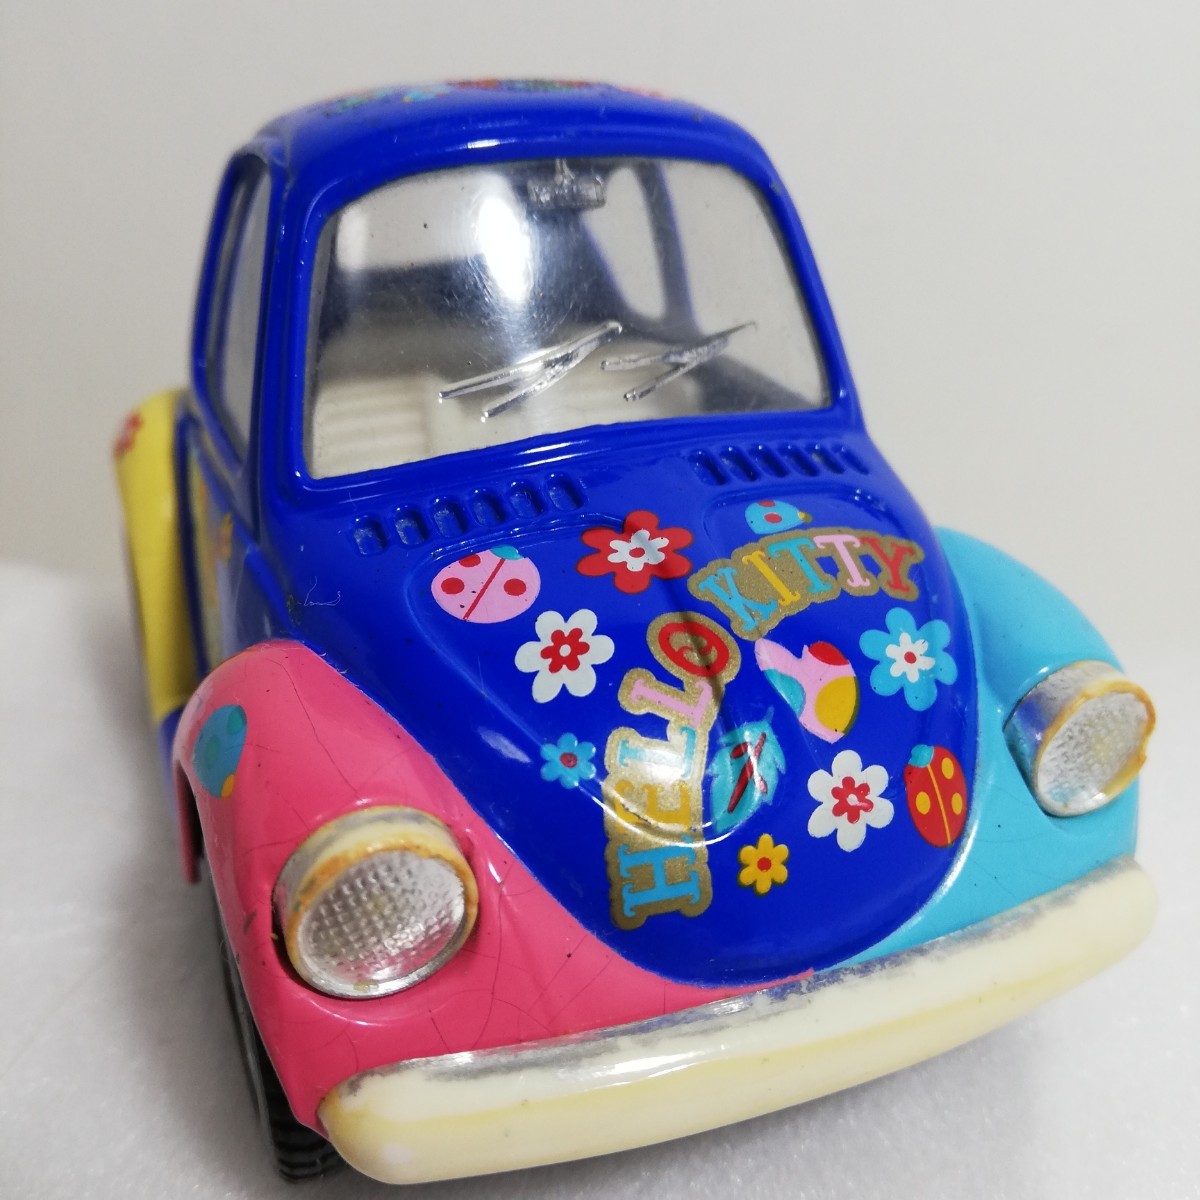 2001年 ハローキティ ビートル プルバックカー 9cm 動作品 ミニカー [Hello Kitty VW Volkswagon Beetle Kin Toy Pull Back Vintage] _画像2